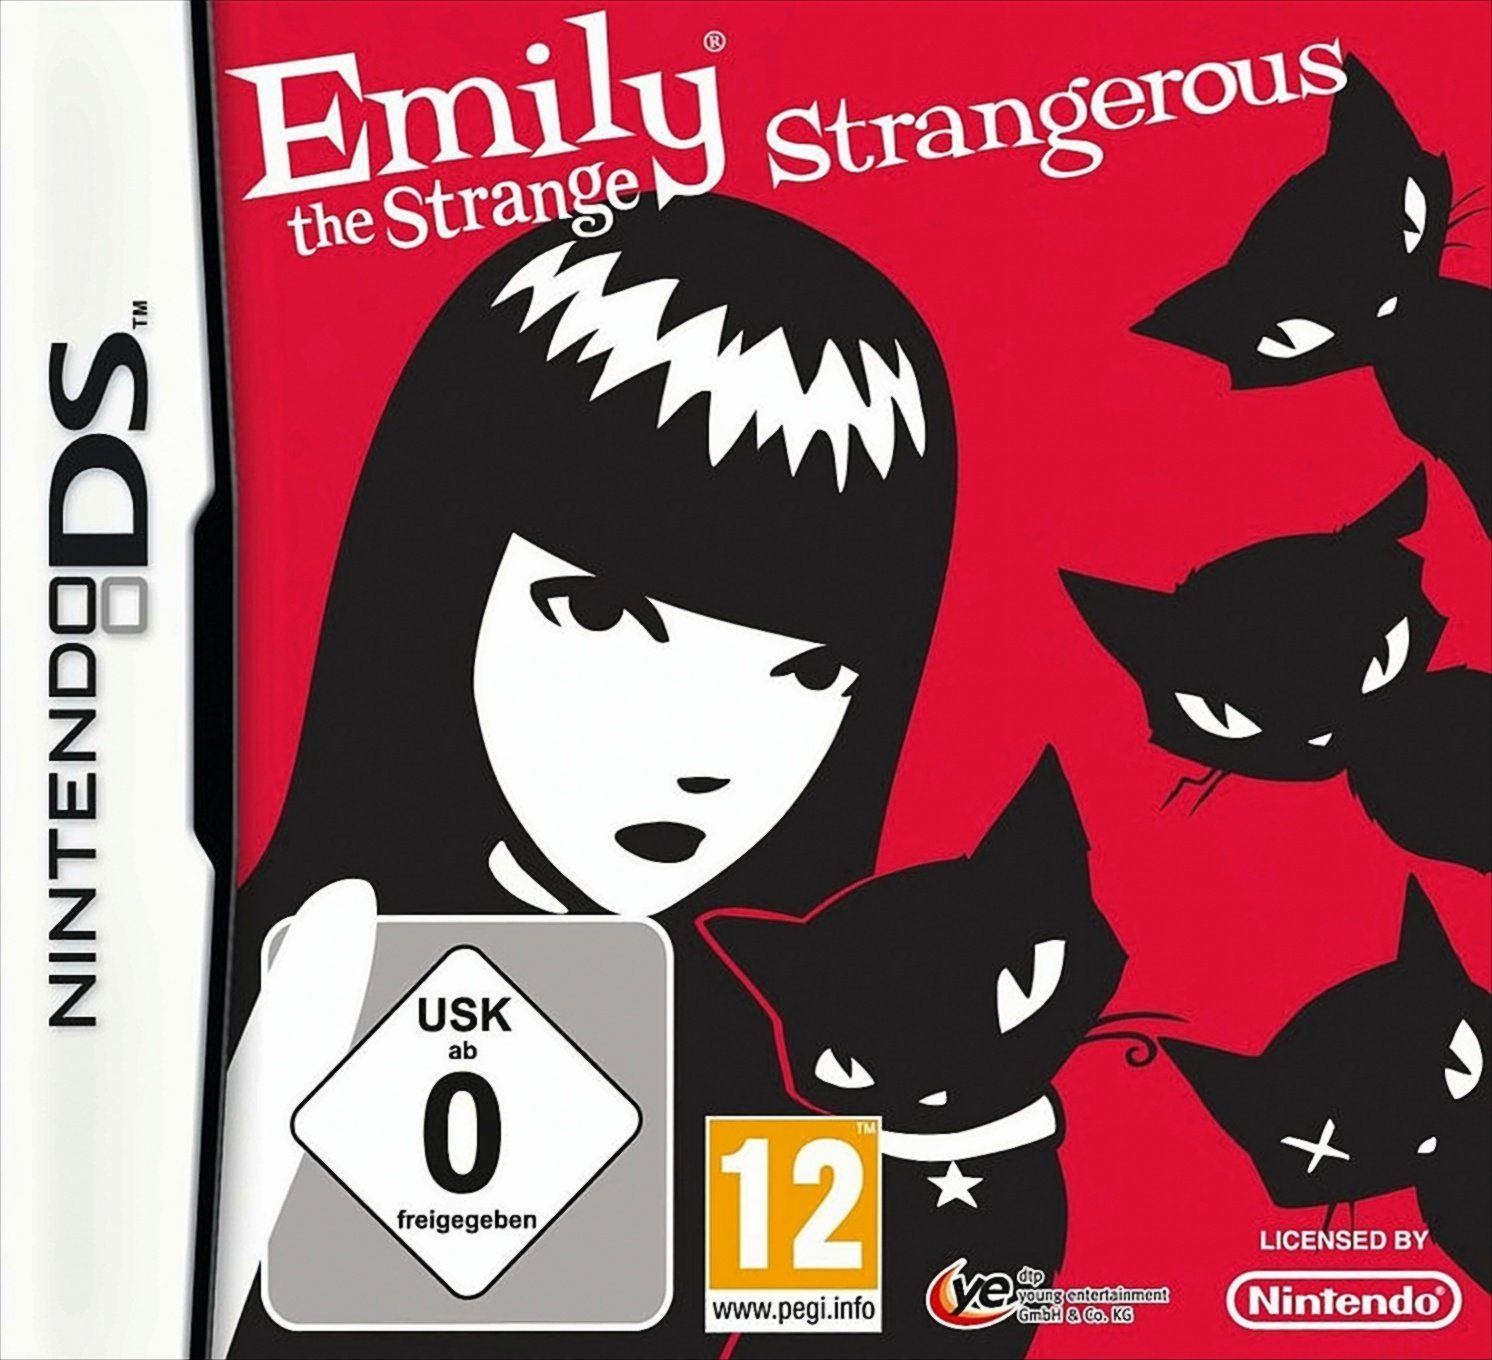 Emily The Strange: Strangerous Nintendo DS